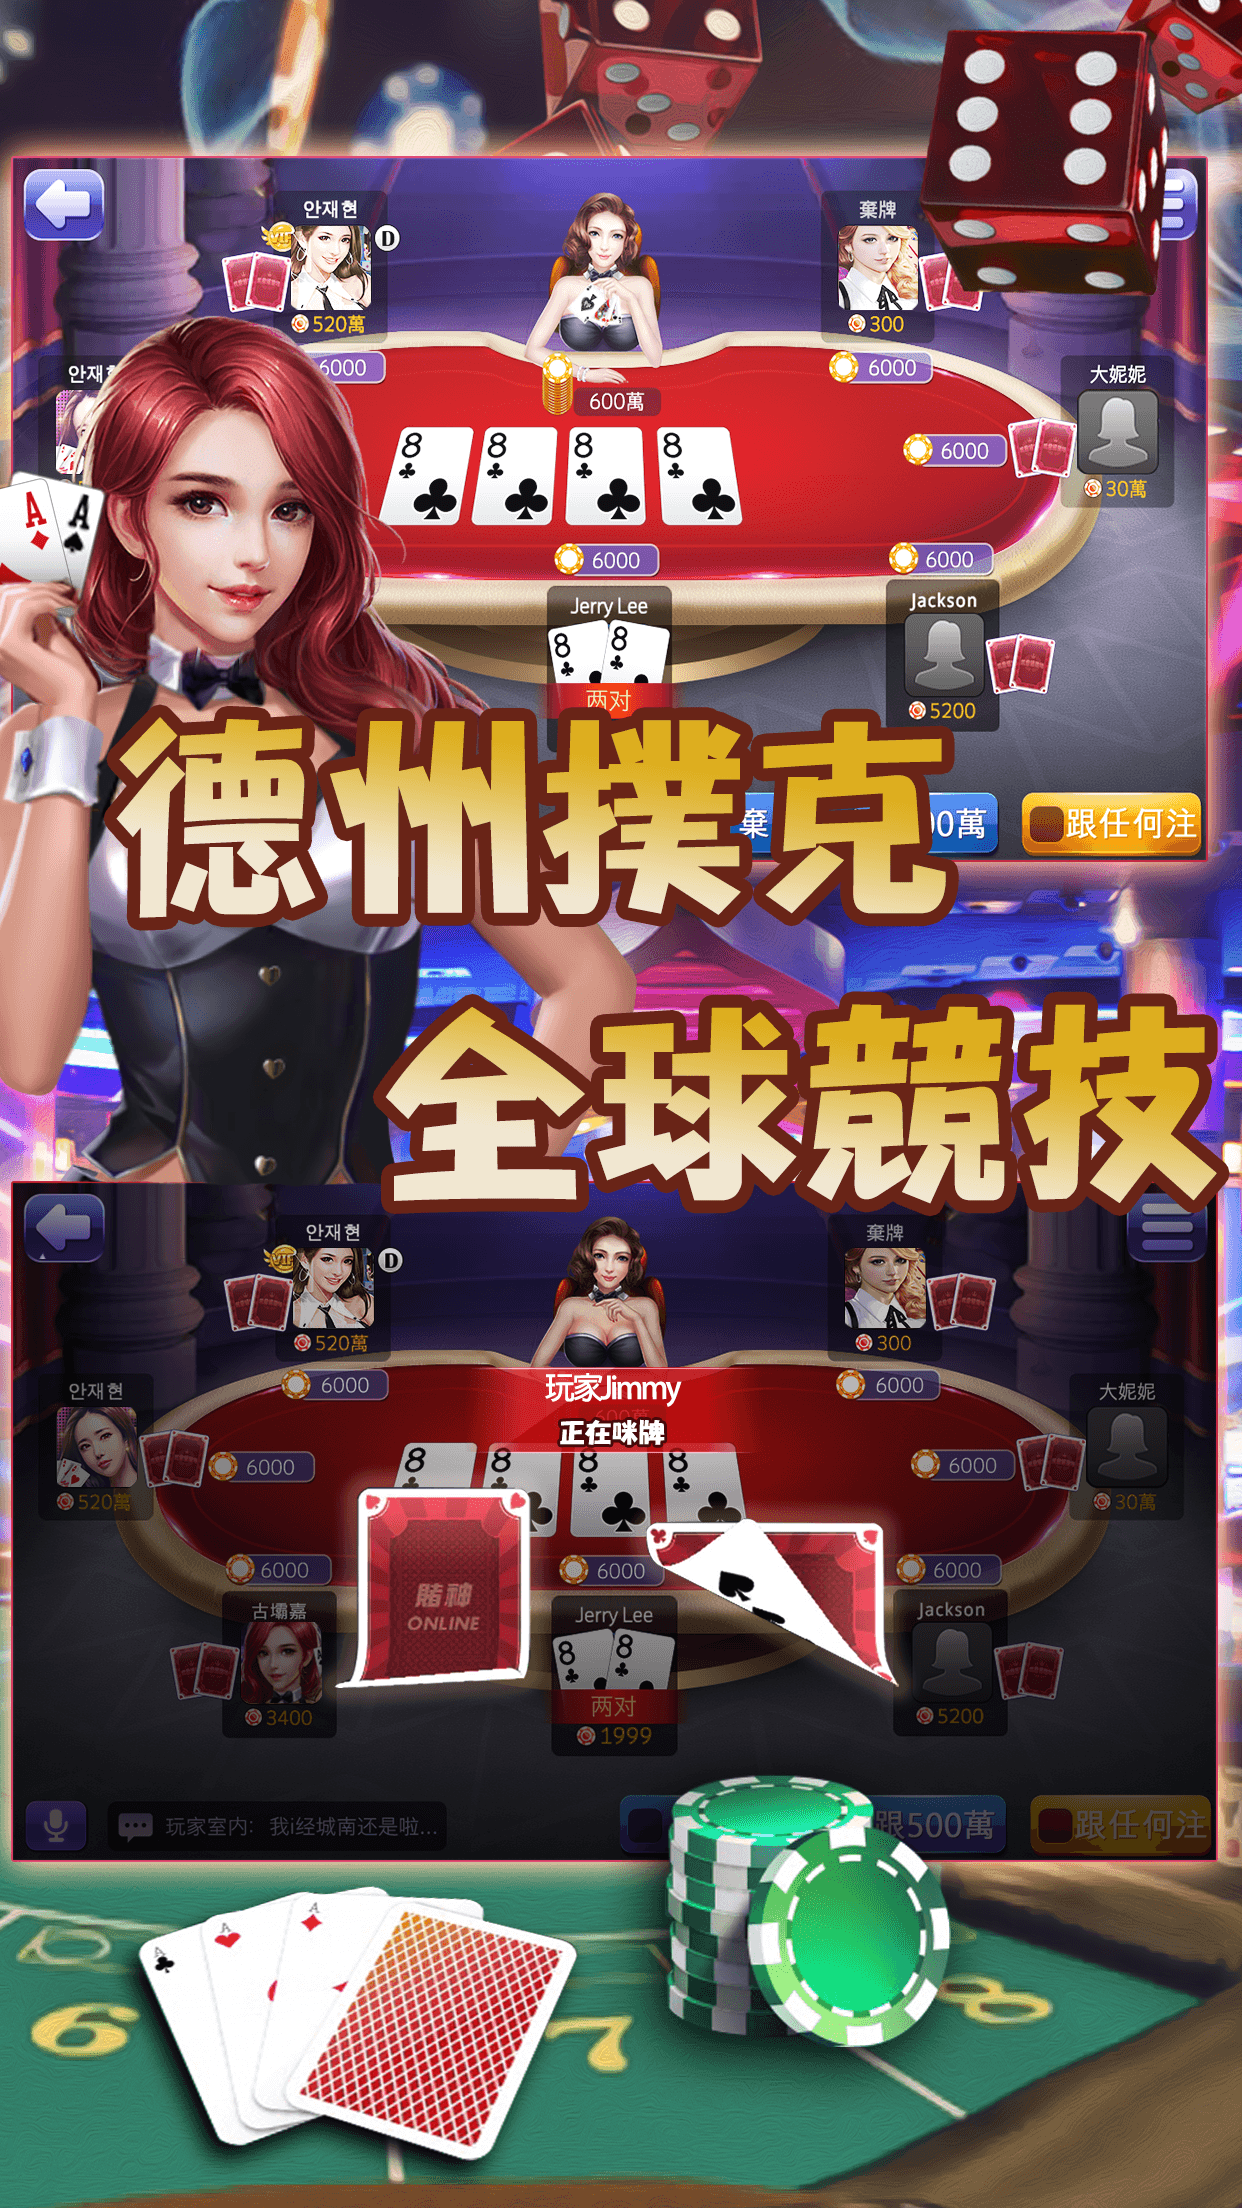 Poker Slot Games Online